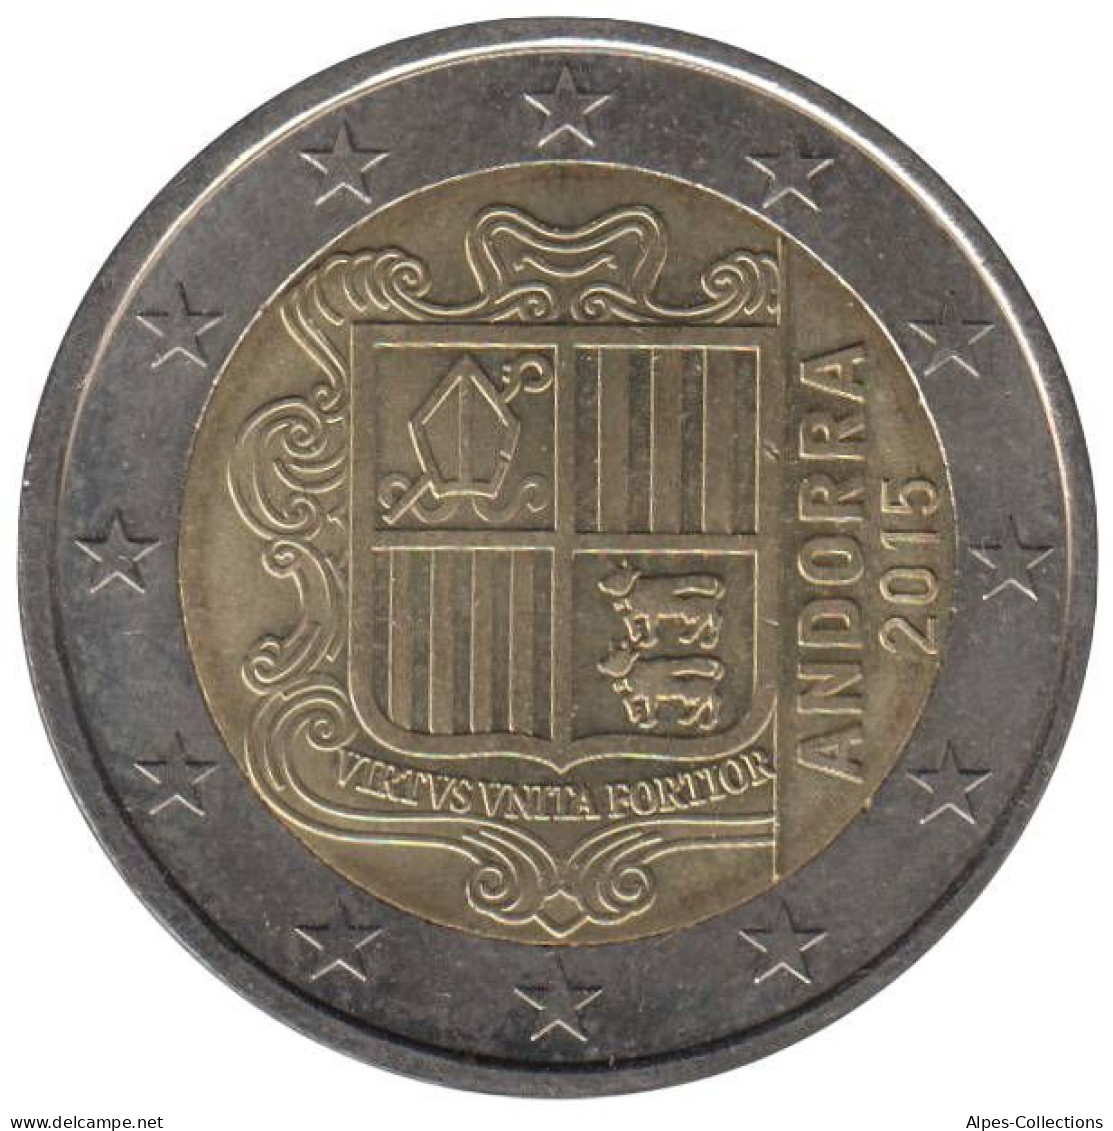 AN20015.3 - ANDORRE - 2 Euros - 2015 - Andorra